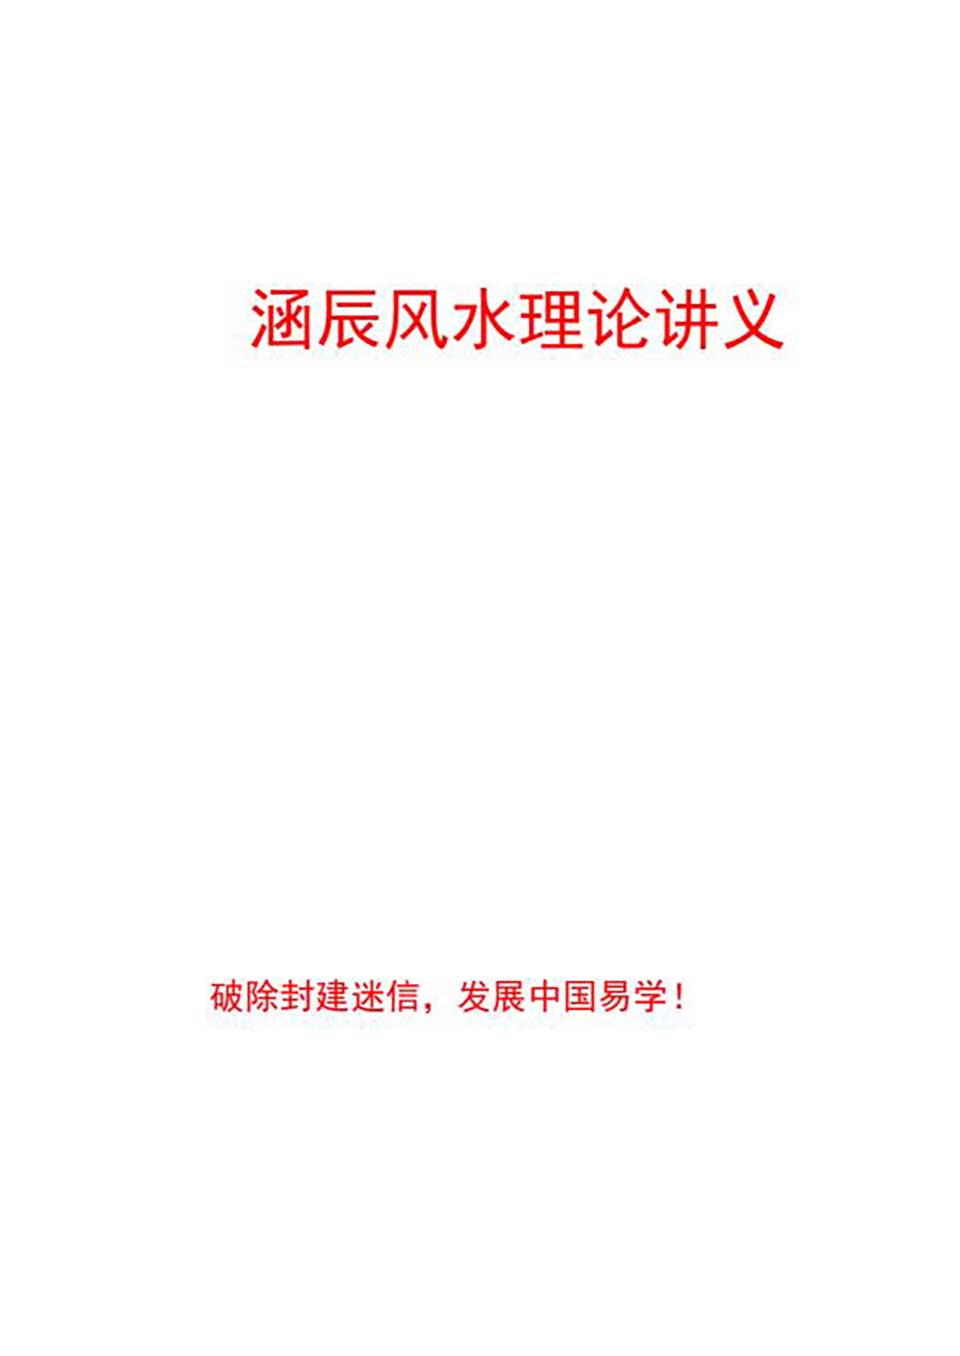 李涵辰-风水班理论讲义大纲【经典】44页.pdf